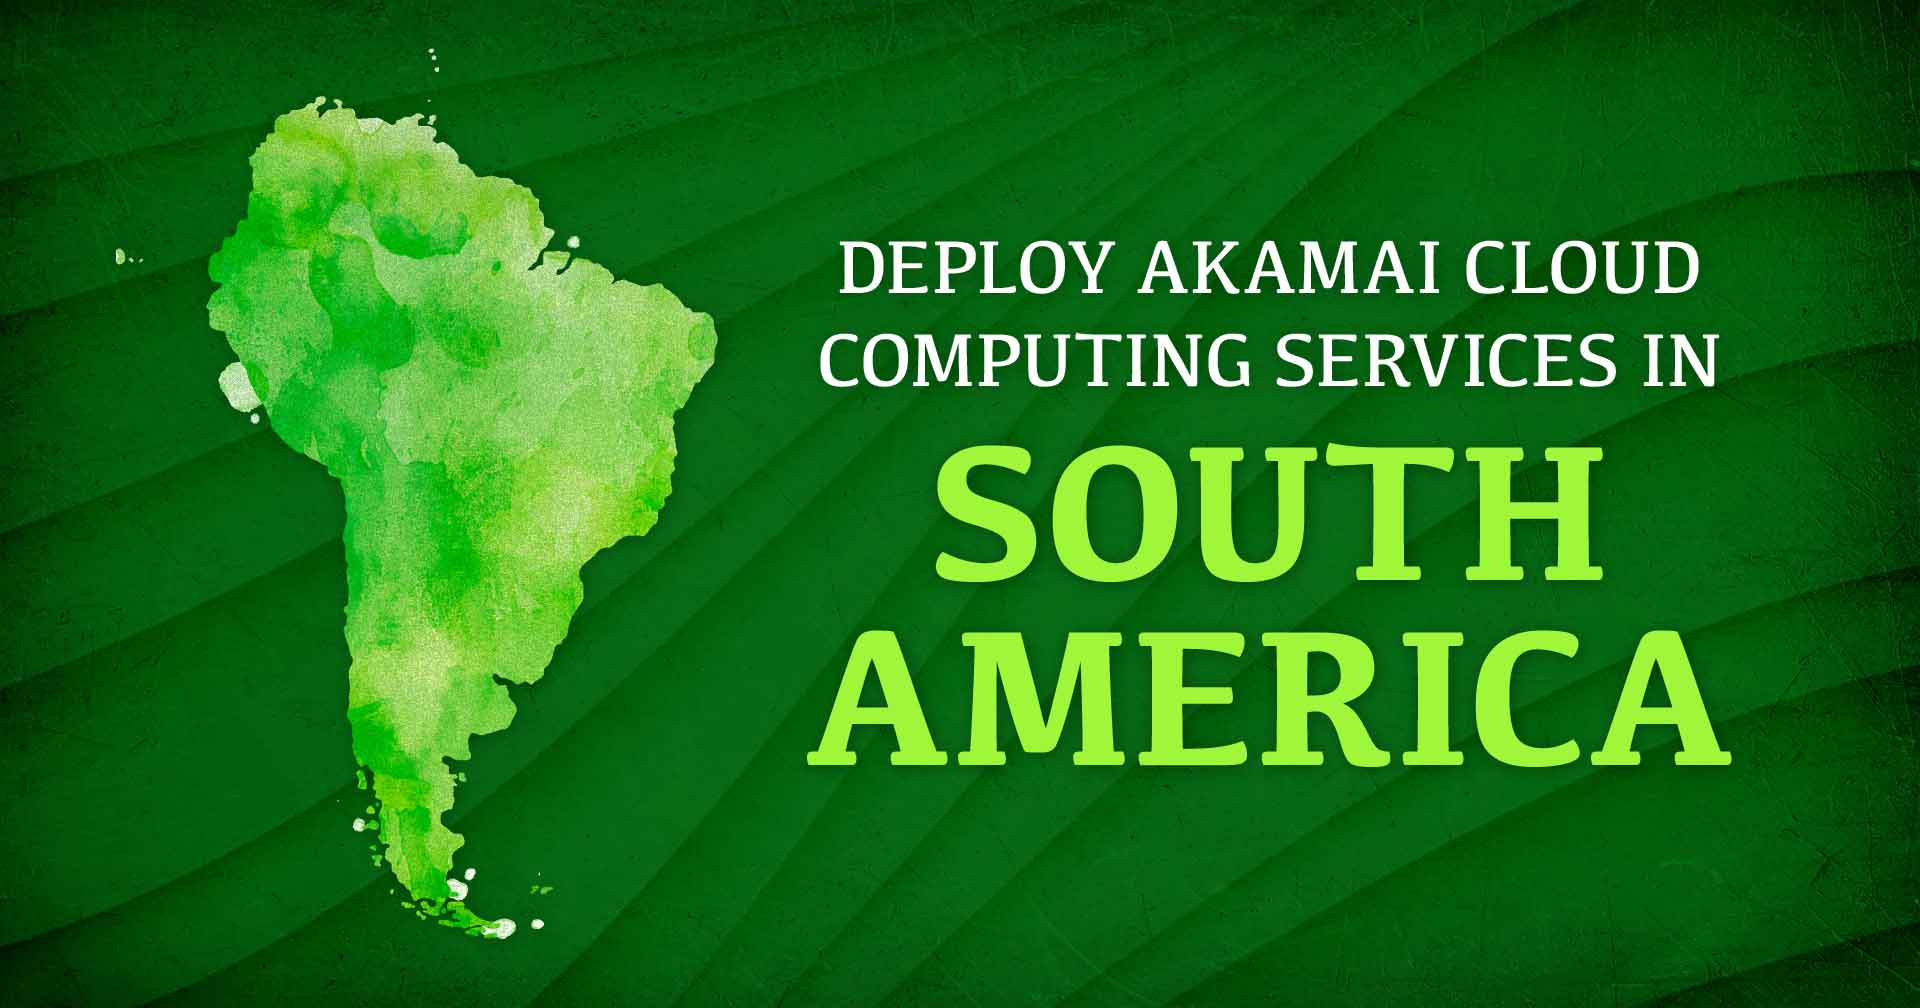 テキスト「Deploy Akamai Cloud Computing Services in South America」の隣にある南米のイメージ。